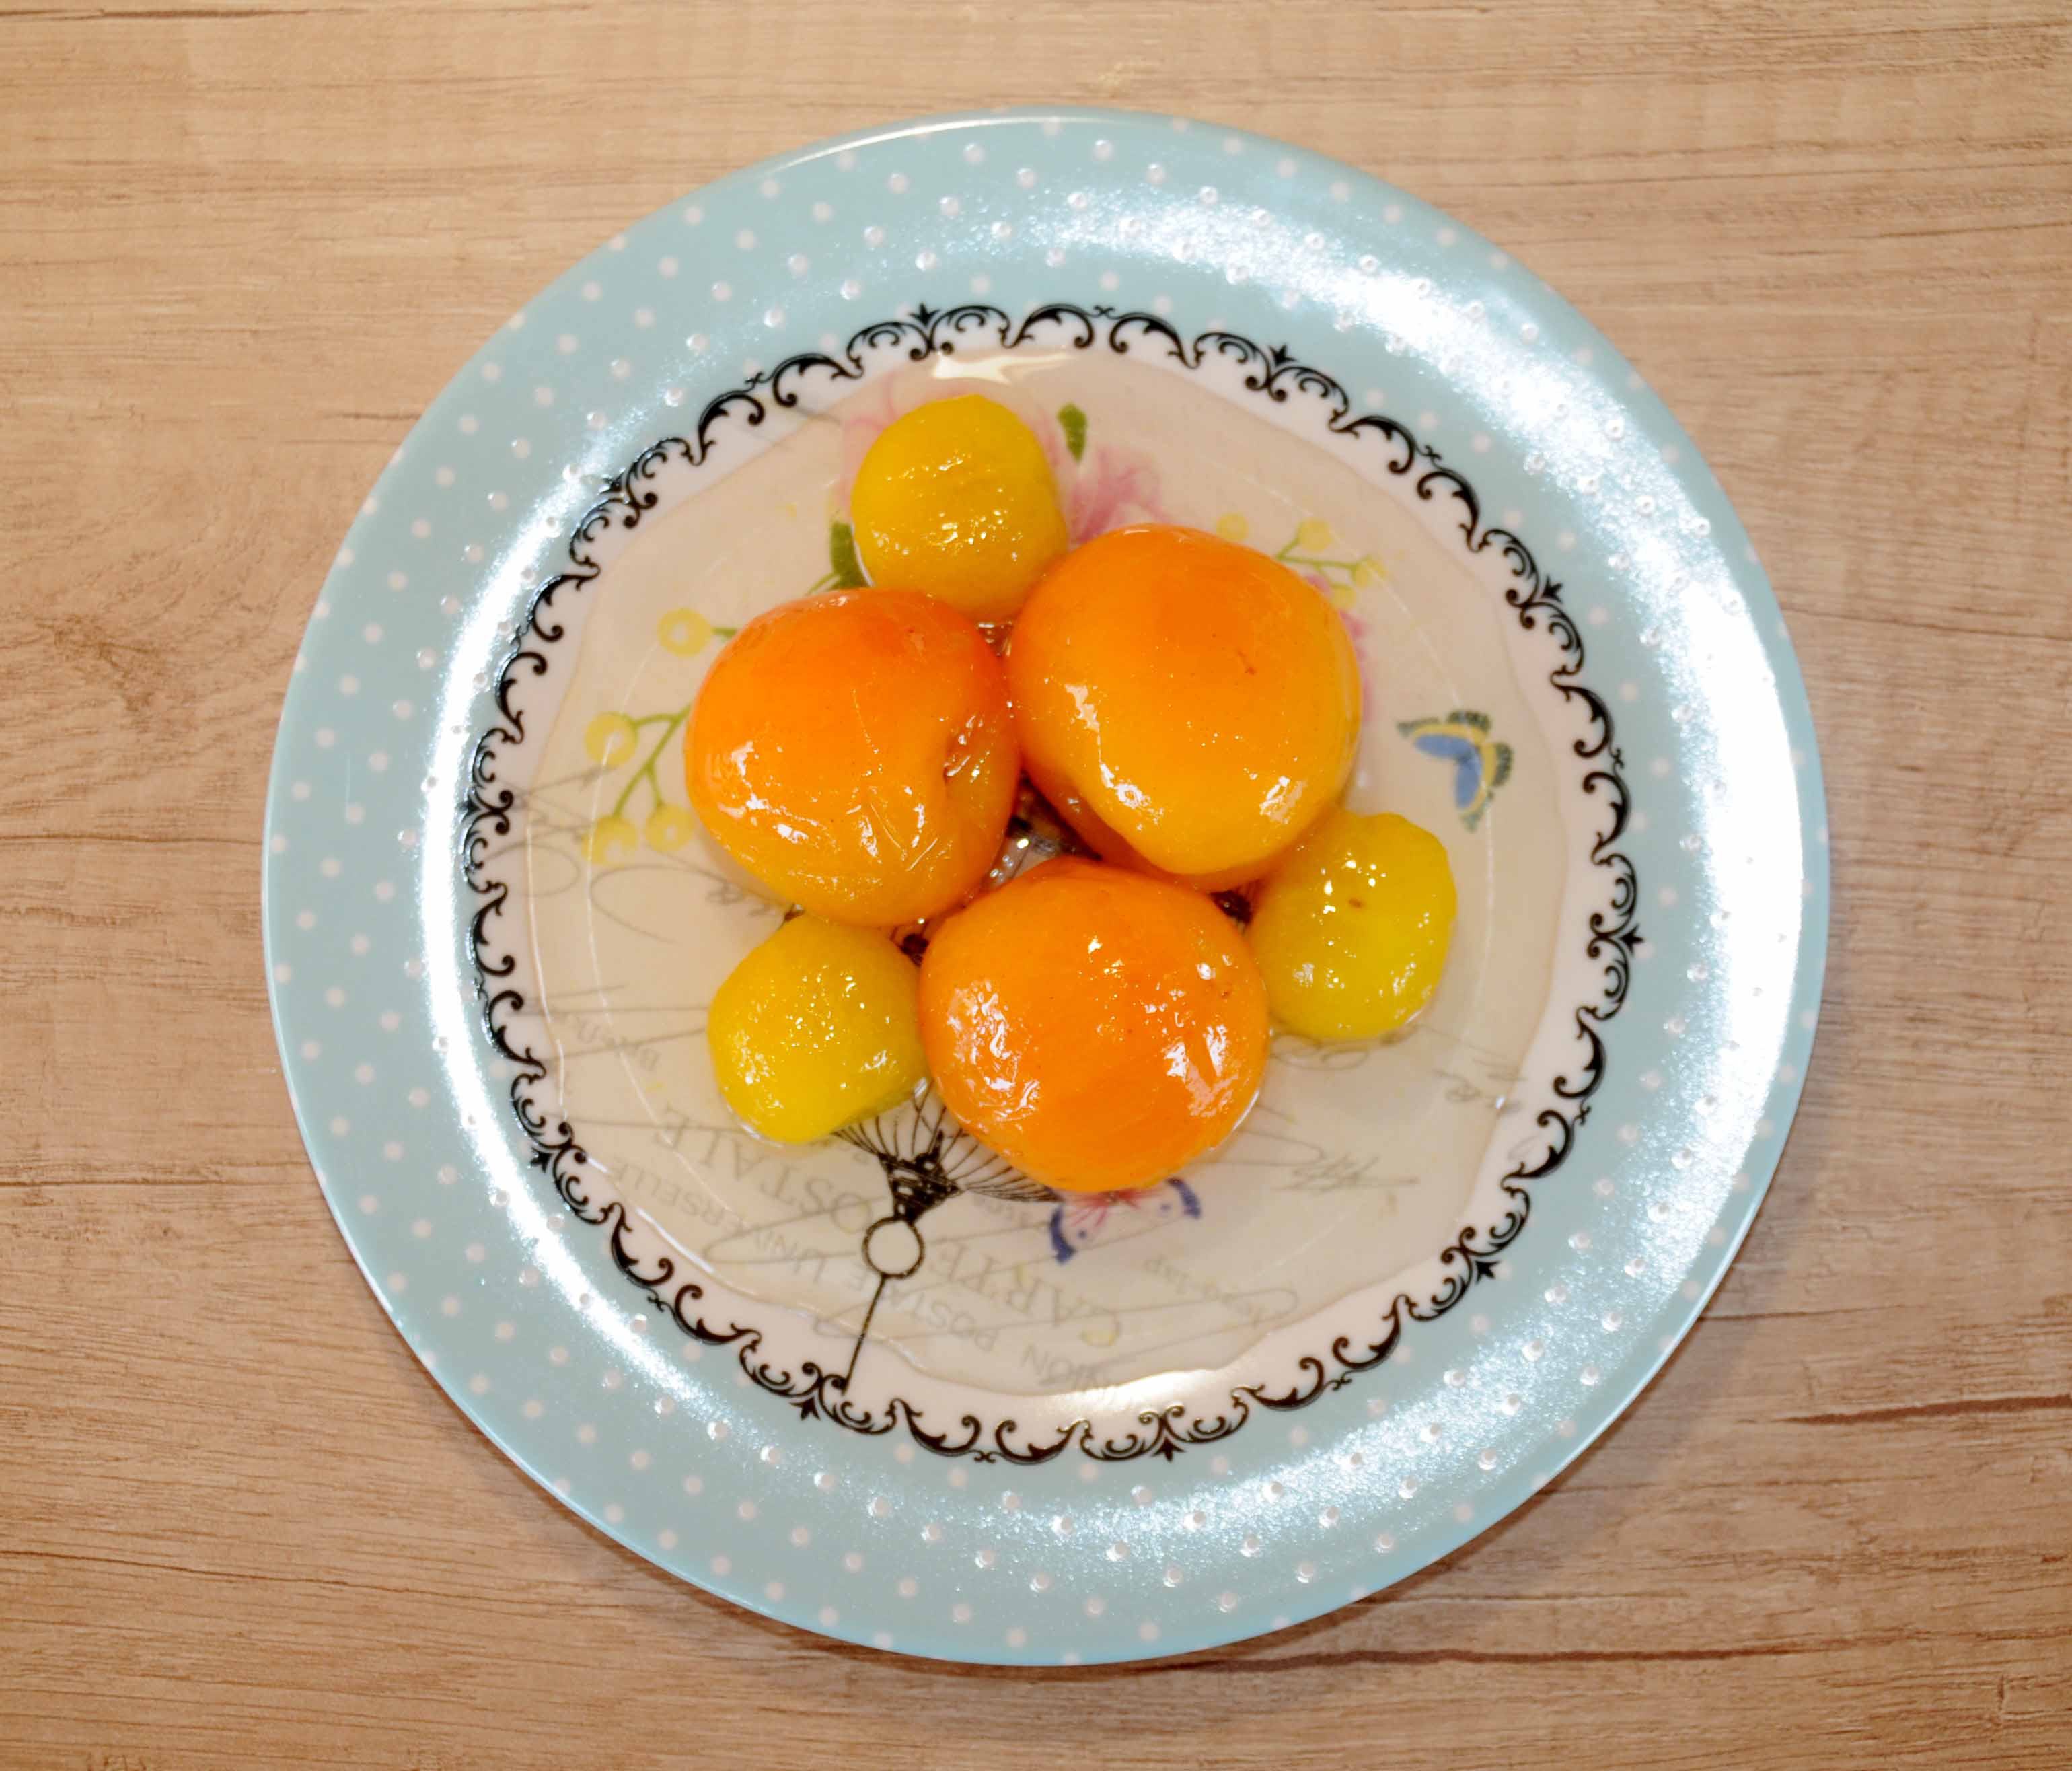 Γλυκό κουταλιού κορόμηλο κίτρινο και βερίκοκο - Sweet of yellow cherry plum and apricot Preserve